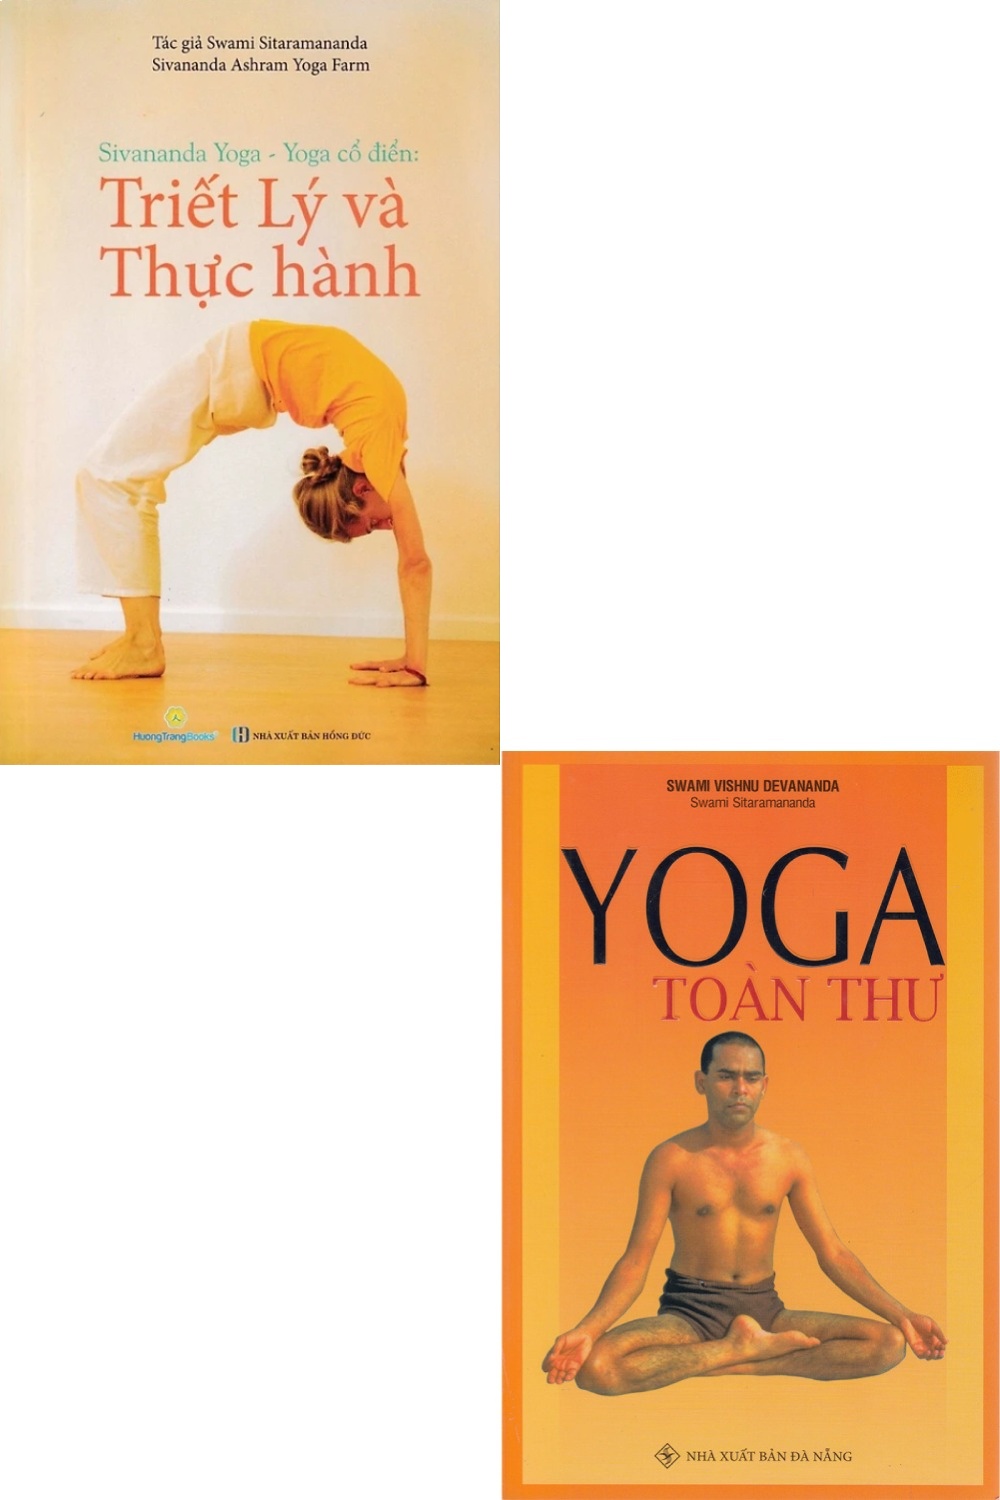 Combo Yoga Cổ Điển - Triết Lý Và Thực Hành + Yoga Toàn Thư (Bộ 2 Cuốn)